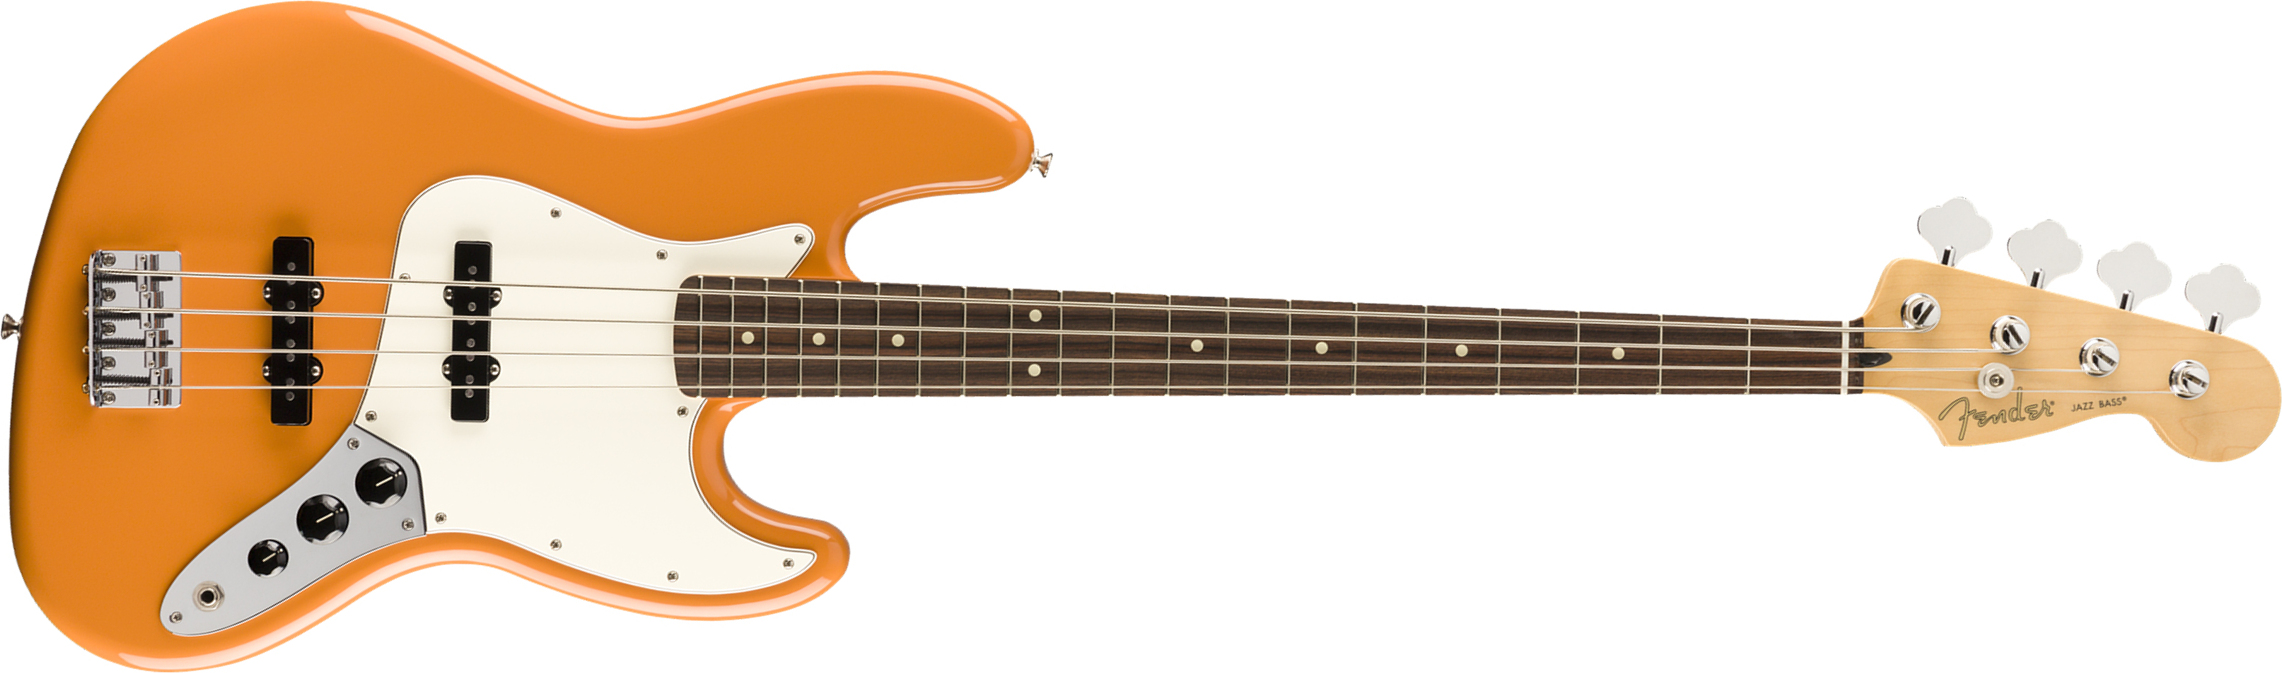 Fender Jazz Bass Player Mex Pf - Capri Orange - Bajo eléctrico de cuerpo sólido - Main picture